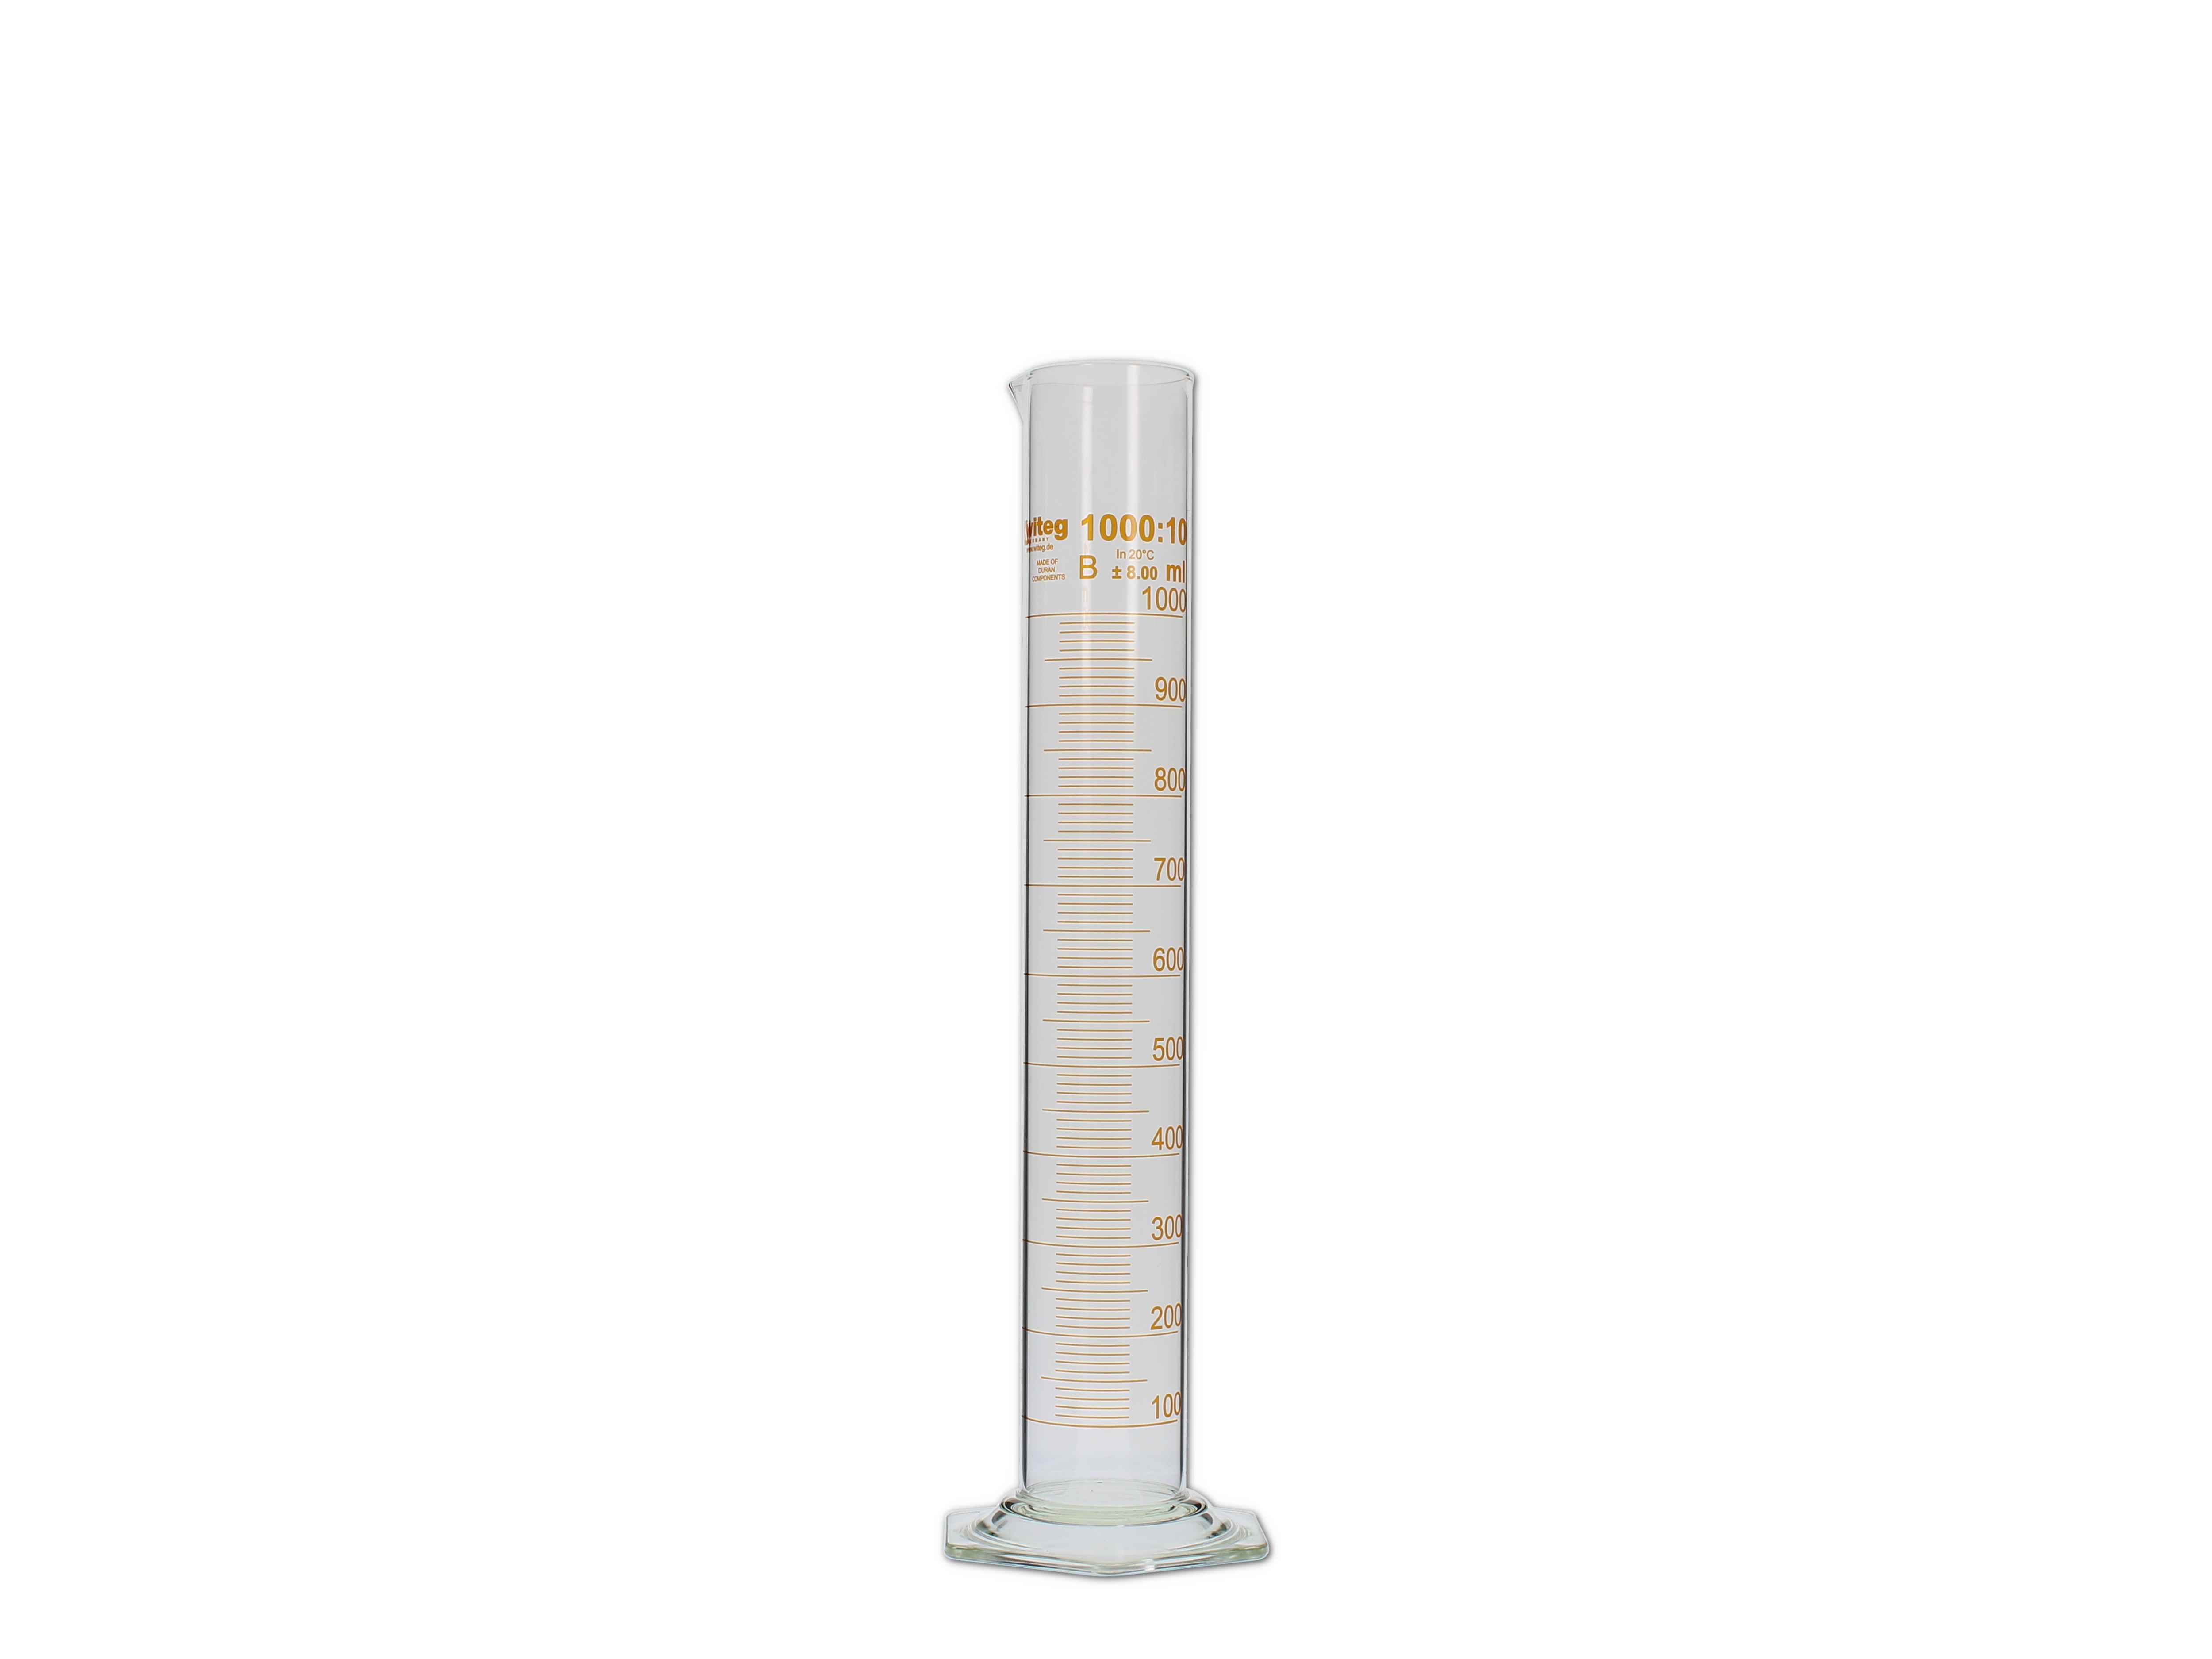    Messzylinder, Glas, graduiert - 1000ml (hohe Form)